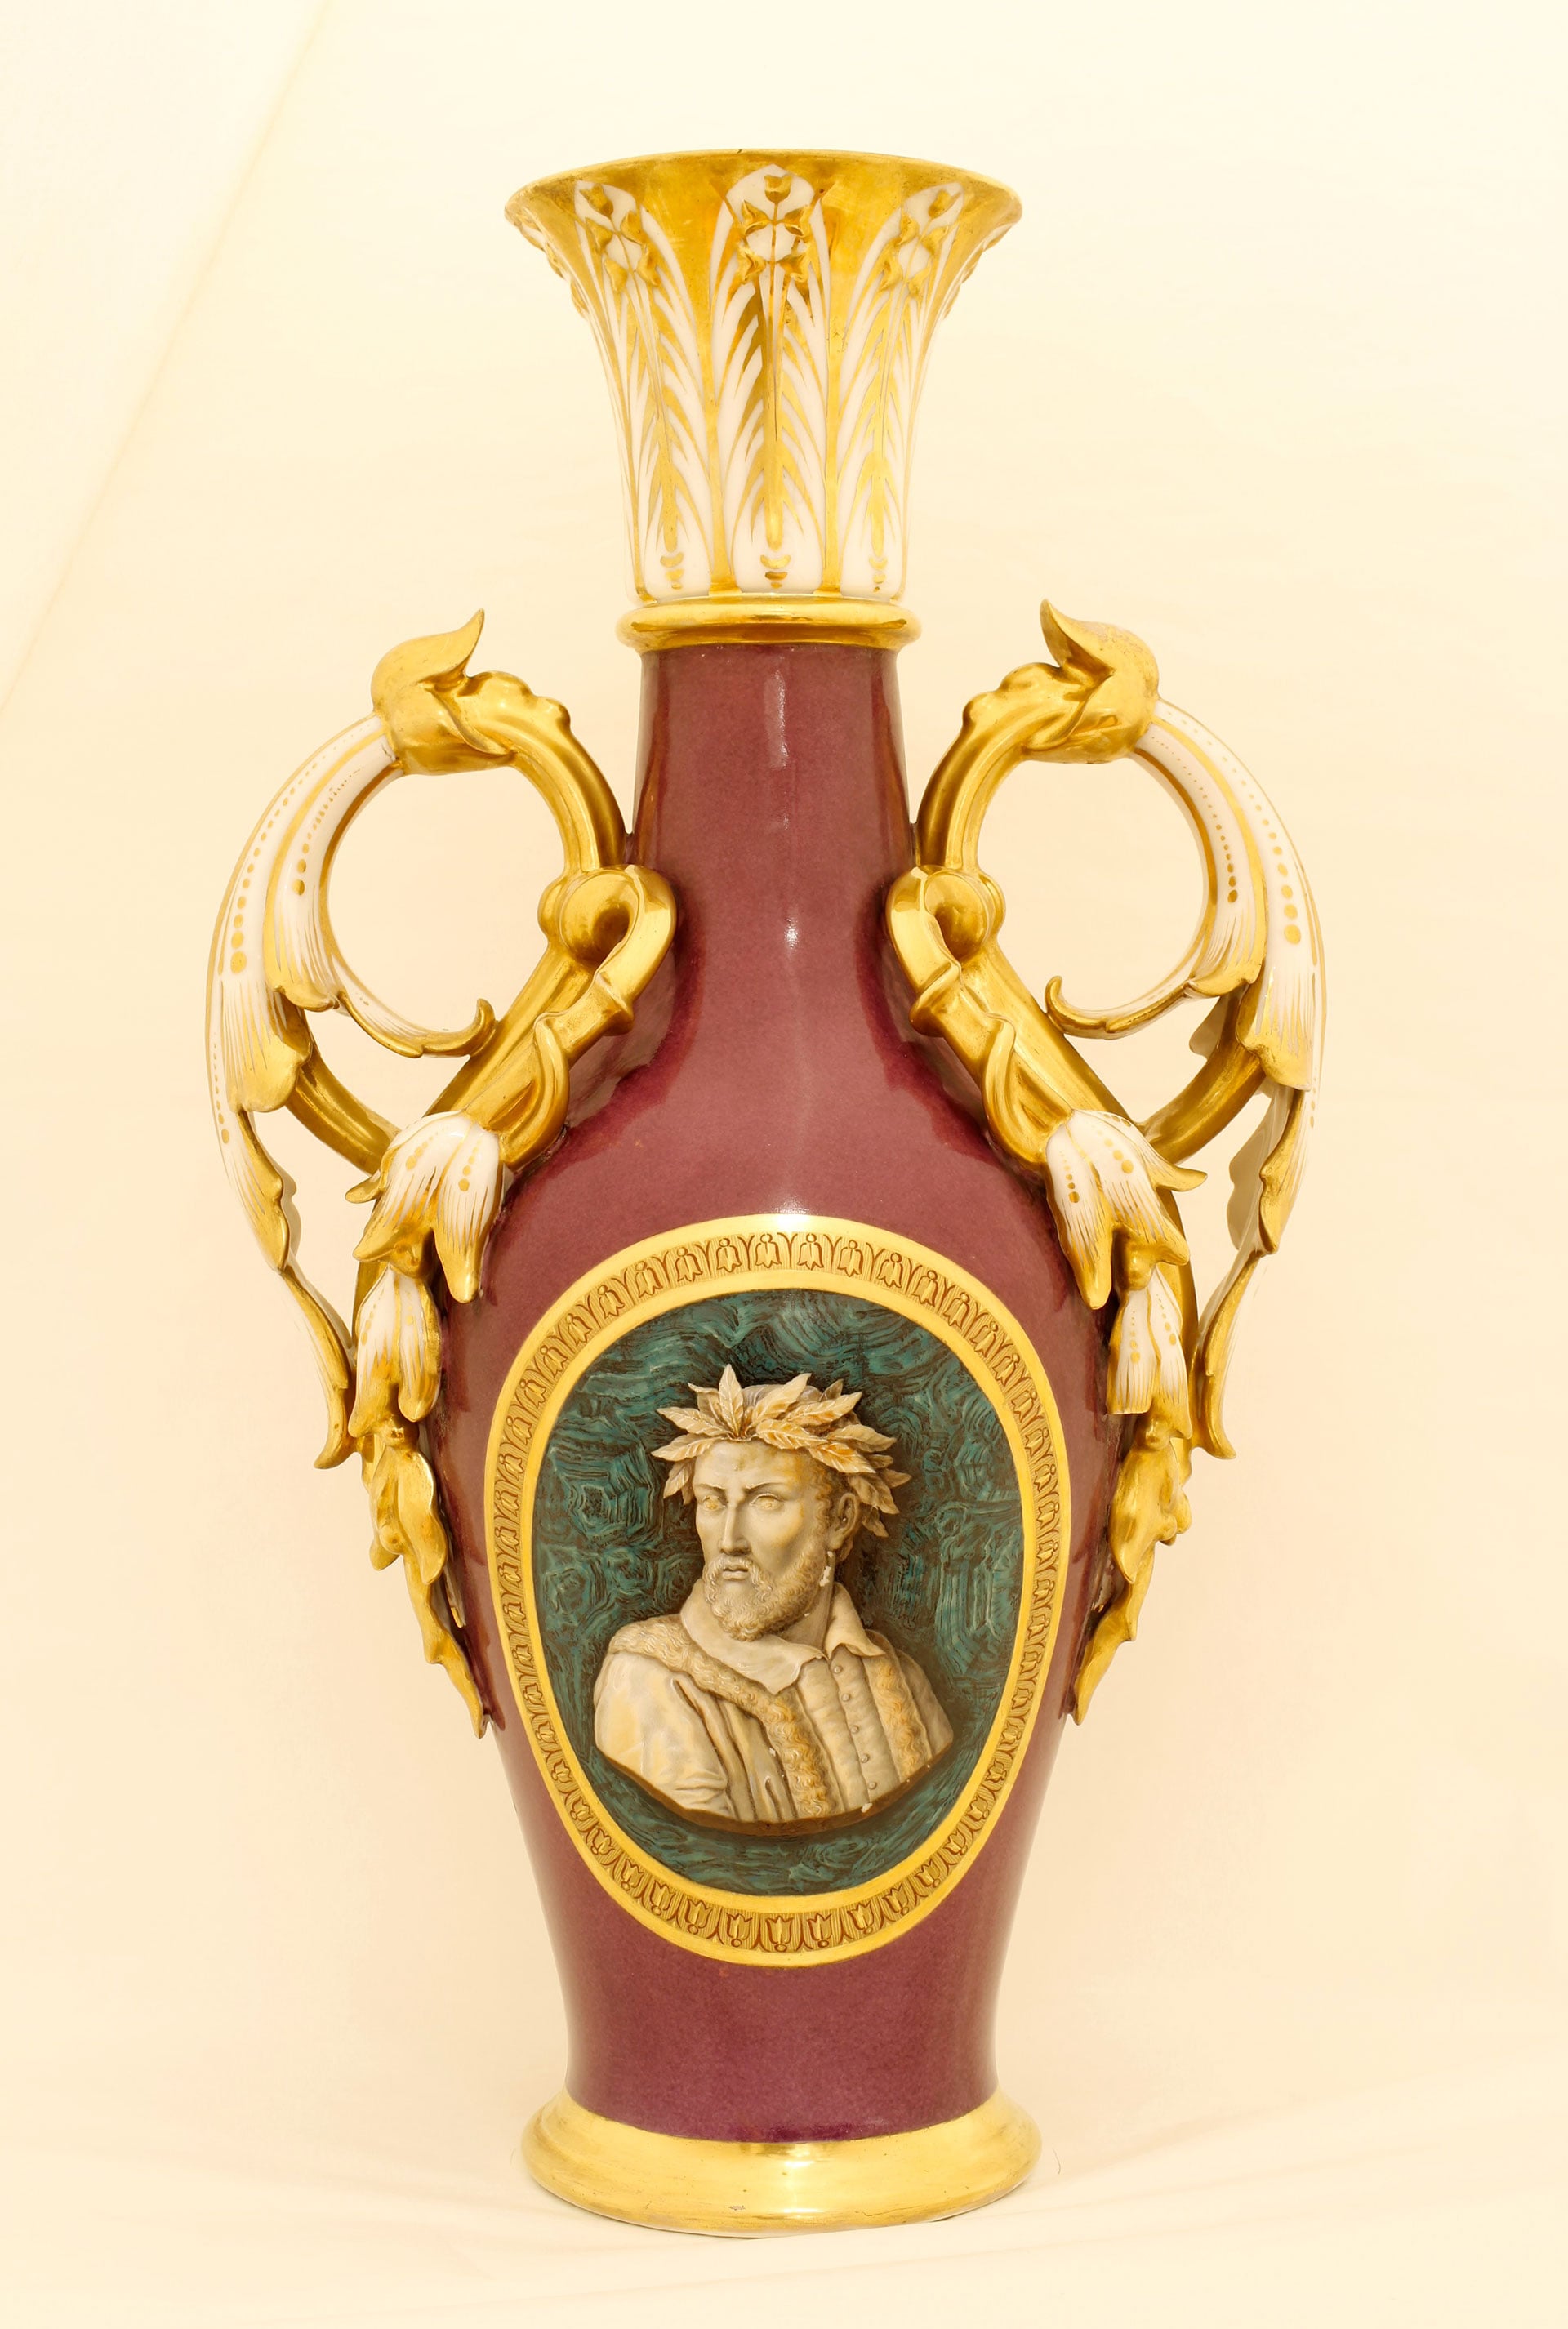 Manifattura francese, seconda metà del XIX secolo. Vaso di porcellana con ritratto di Torquato Tasso. Palazzo Reale di Napoli